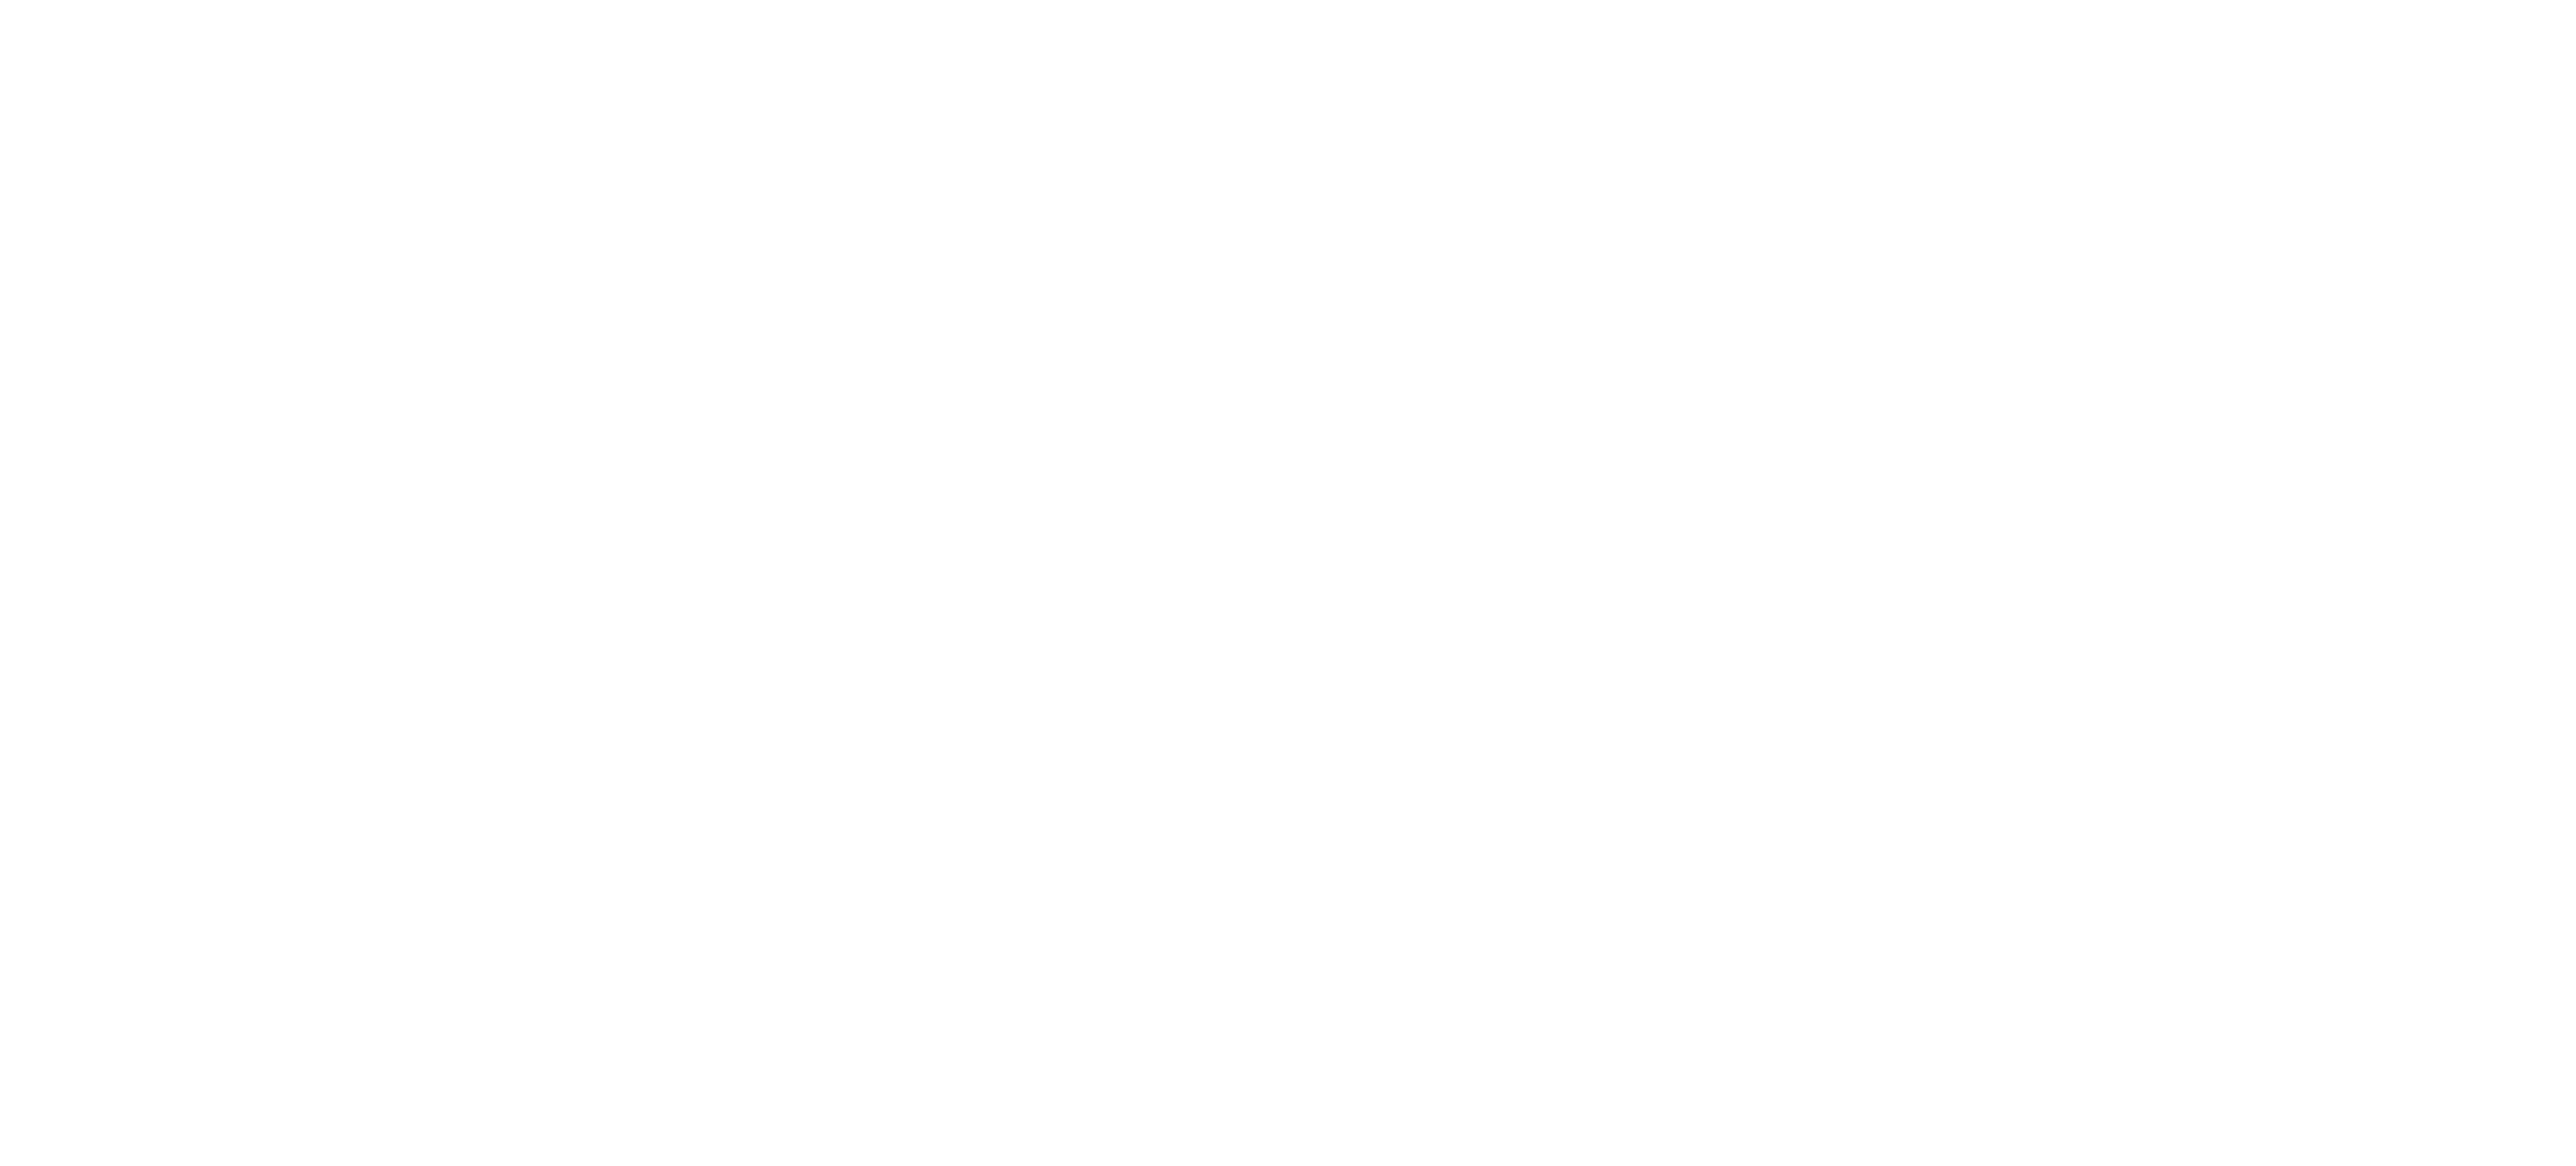 dji-logo
                     